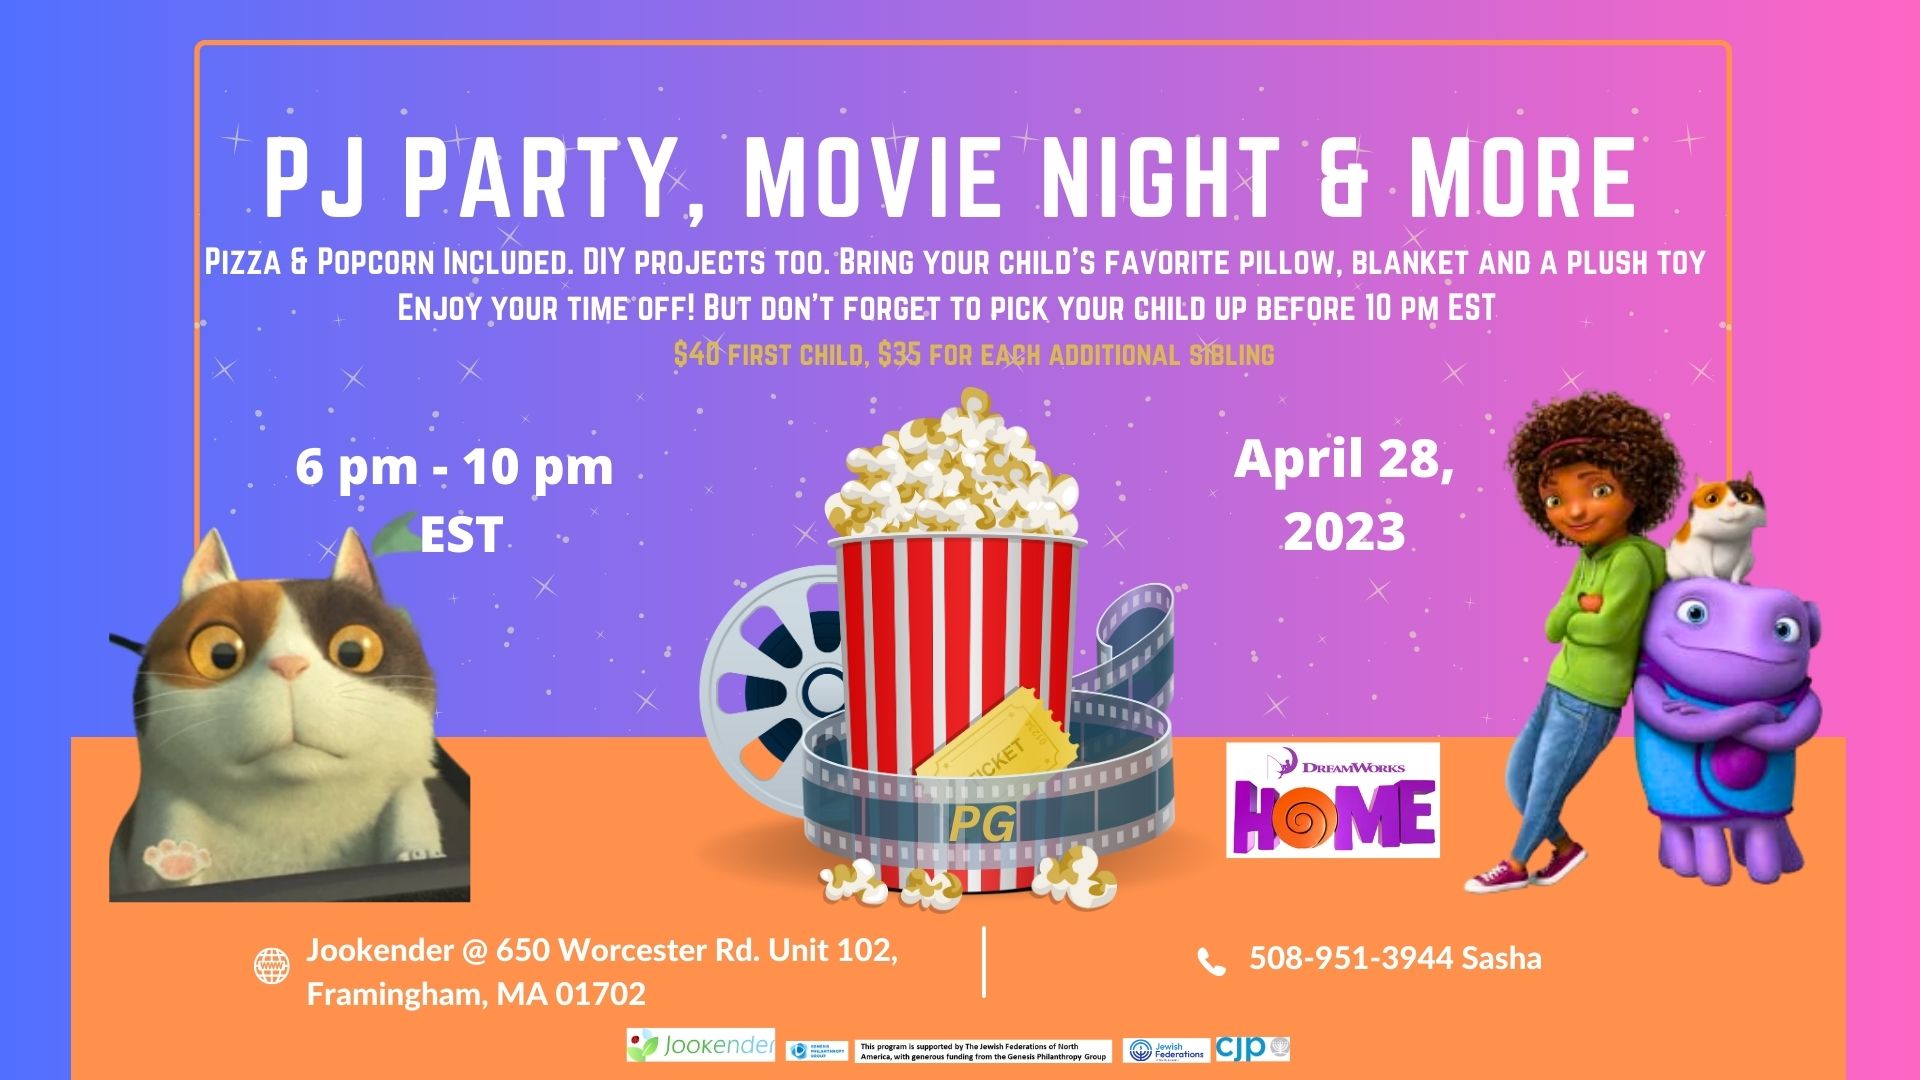 Home - PJ Party, Movie Night & more